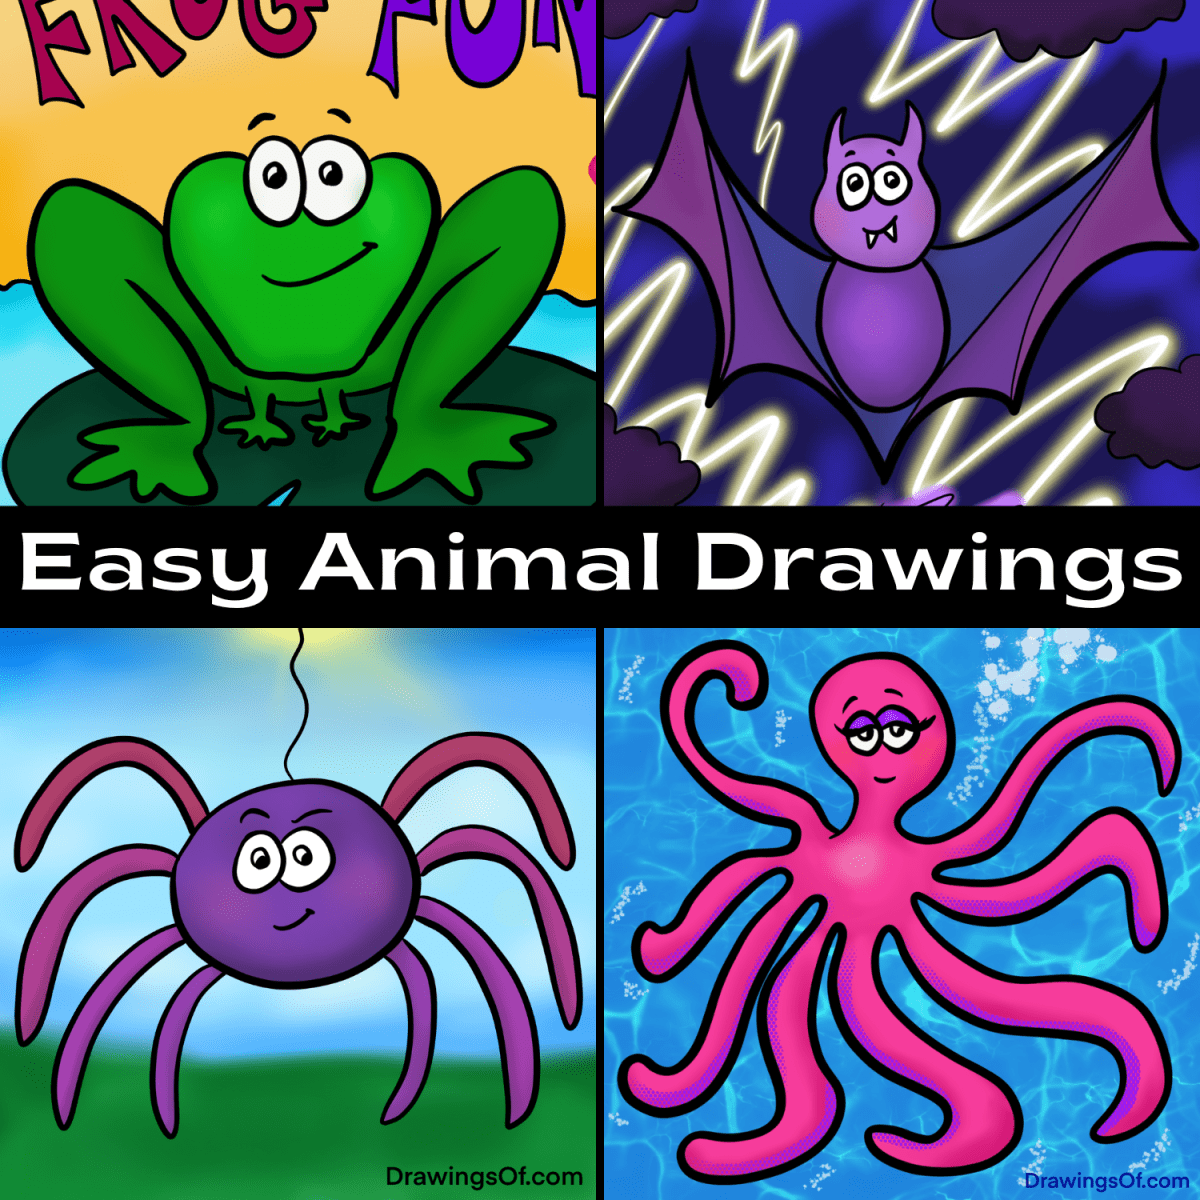 Cute animal drawings: Easy!